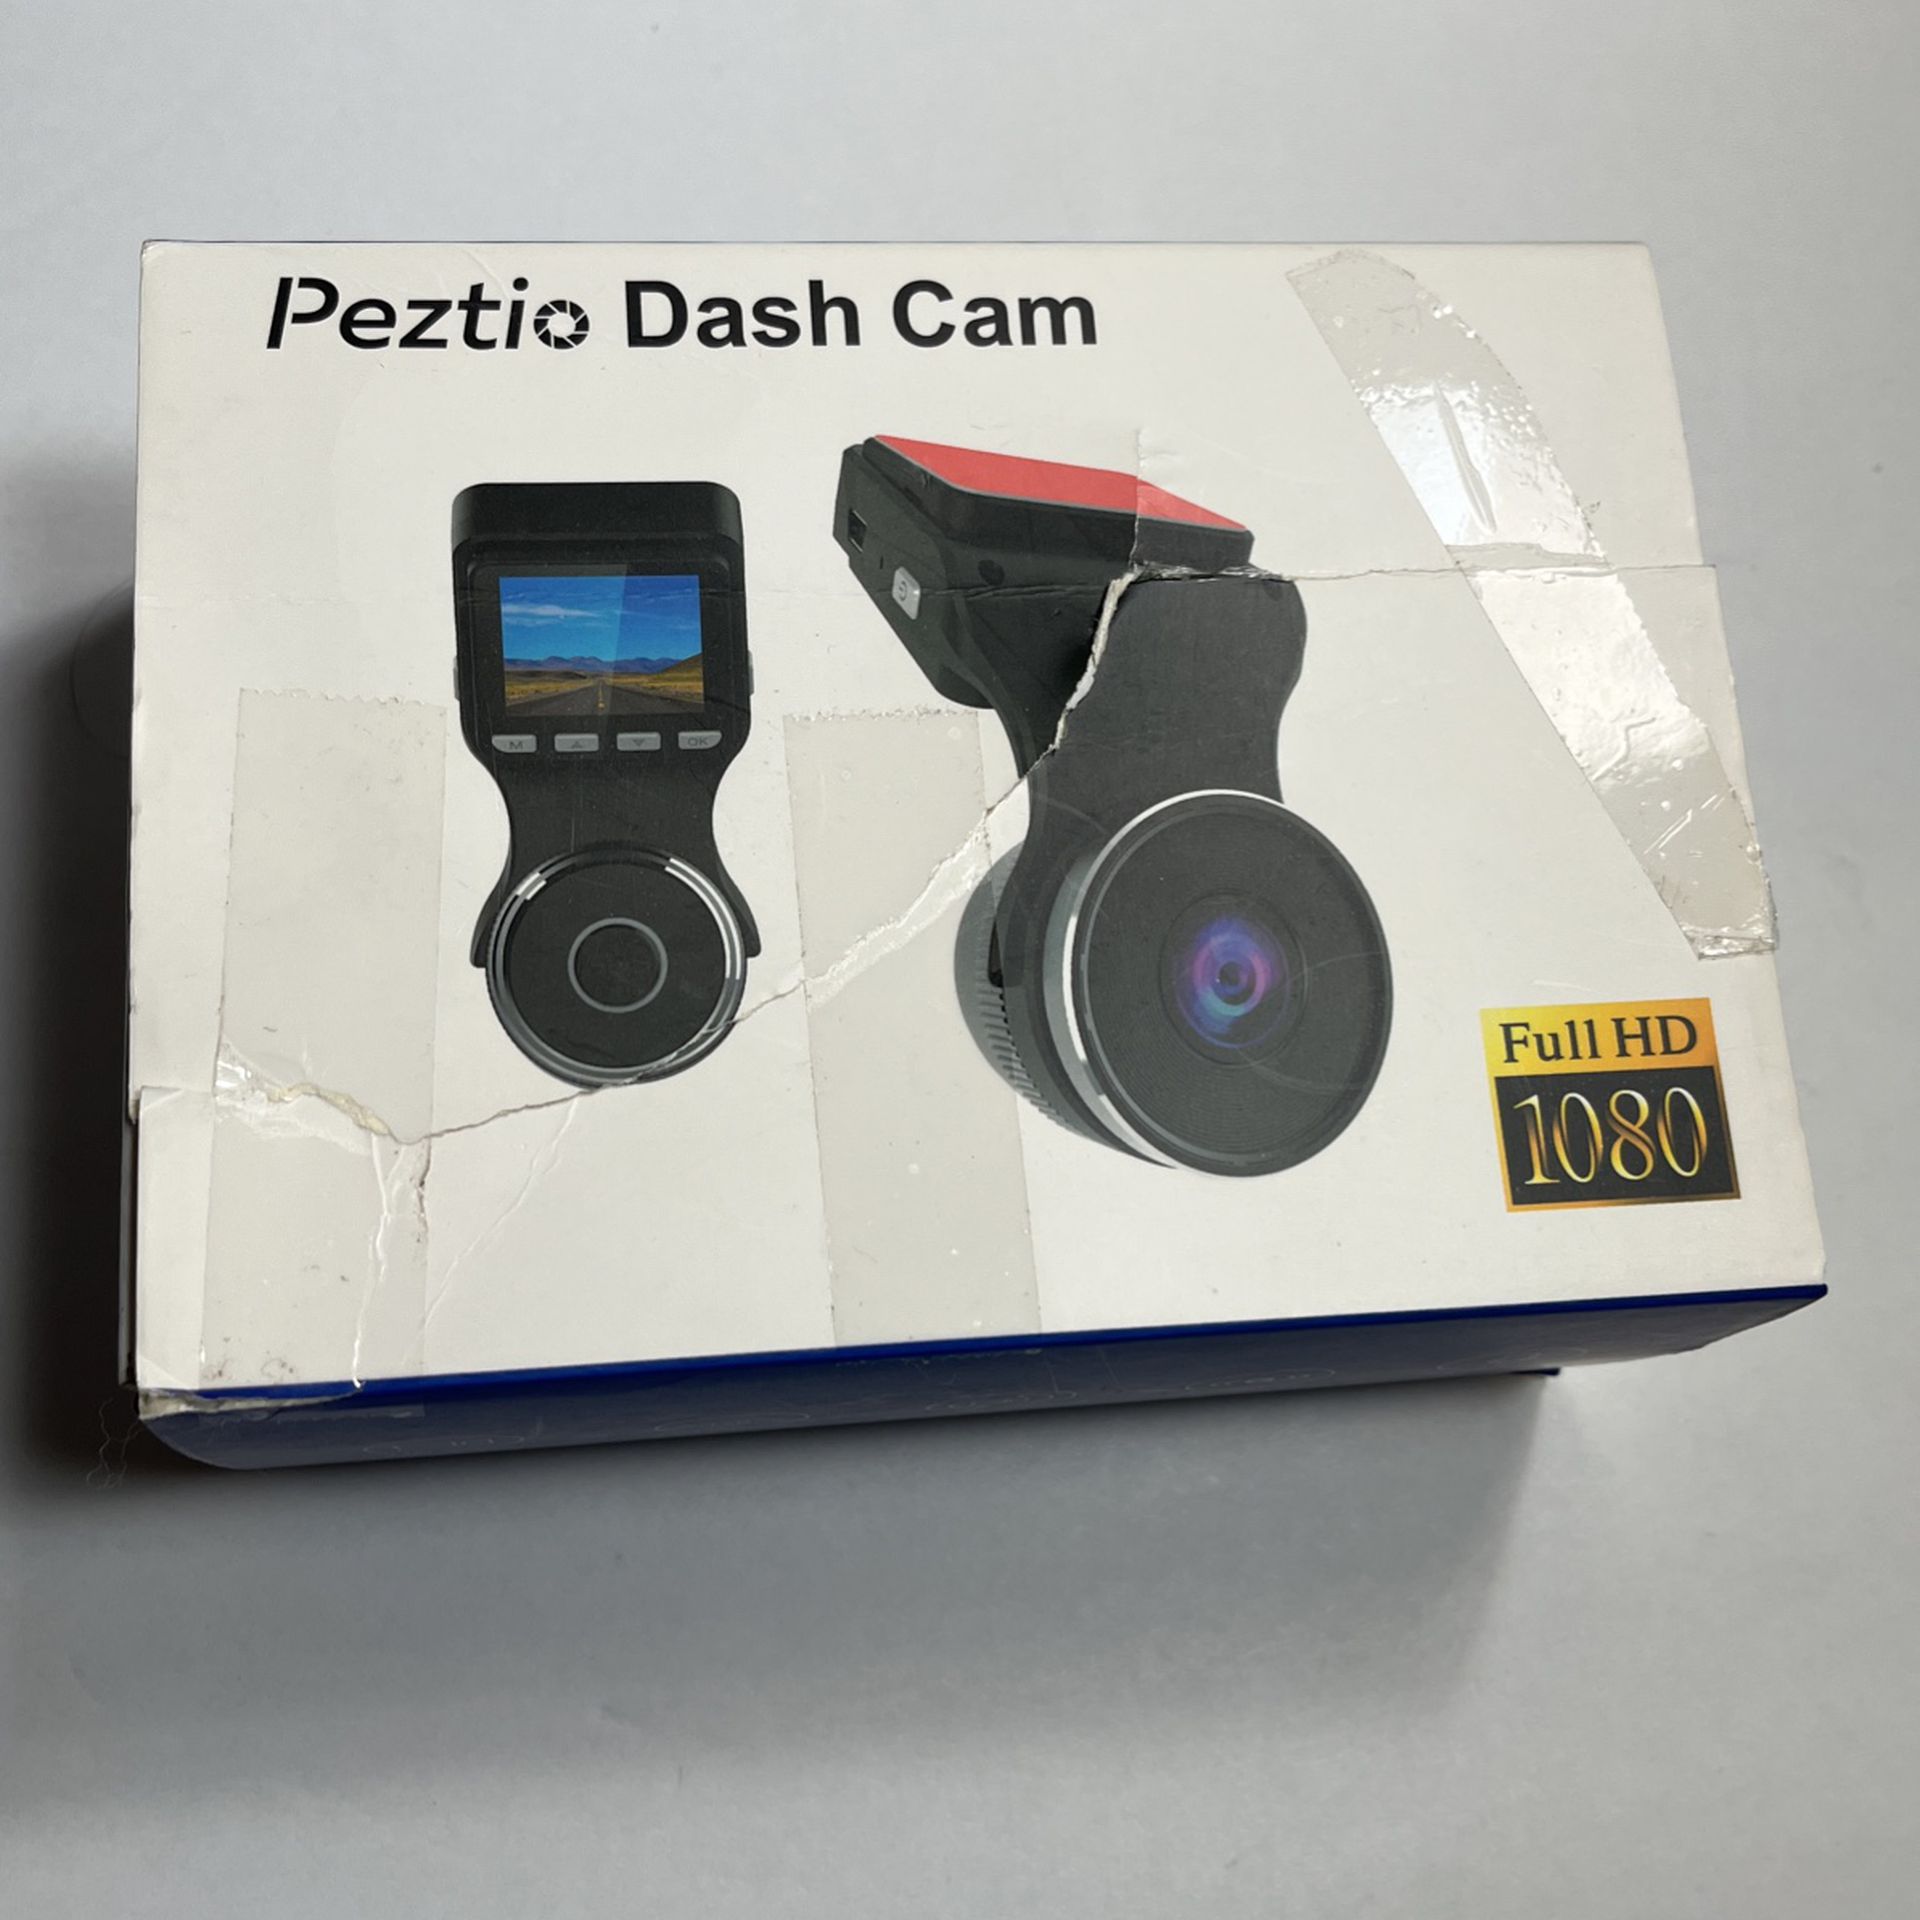 Peztio Dash Cam for Sale in Stockton, CA - OfferUp